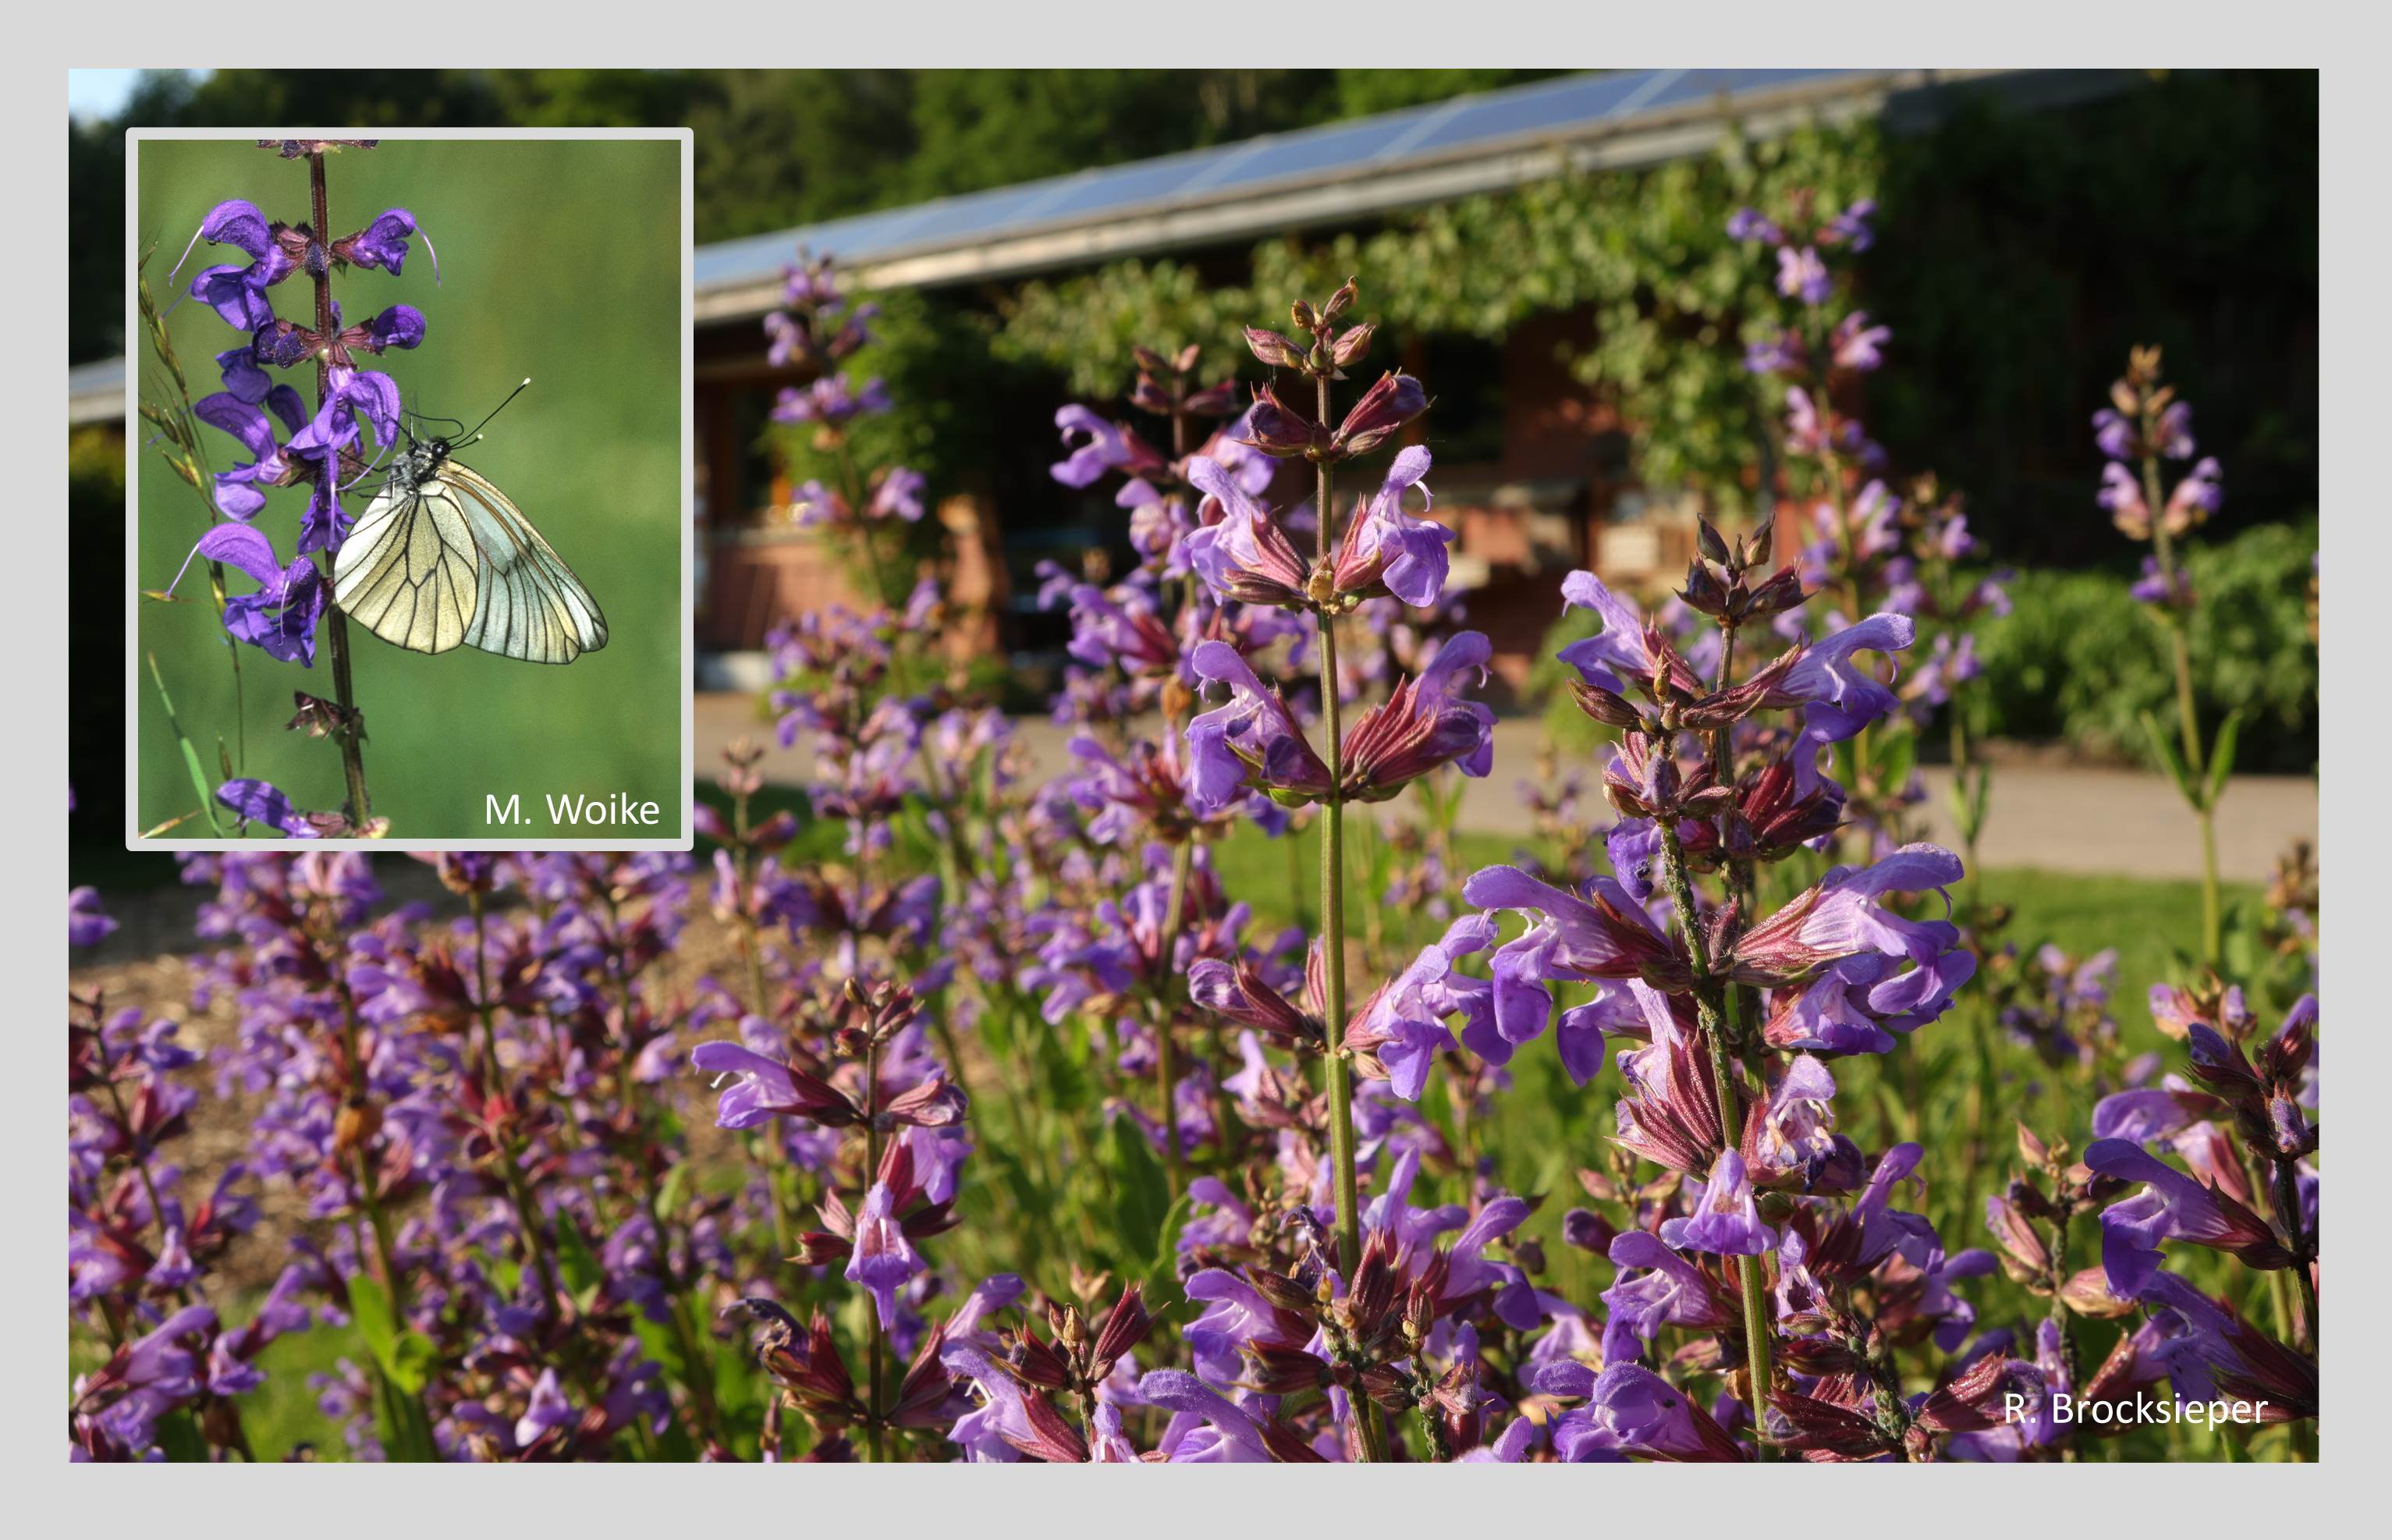 Der Salbei (Salvia spec.) gehört zu den Duft- und Gewürzpflanzen, wächst aber auch dekorativ im Staudenbeet. Bienen, Hummeln und Schmetterlinge befliegen die leuchtend blauen Blüten, sowohl der Wild- als auch der Zierformen – hier ein heute selten gewordener Baumweißling.